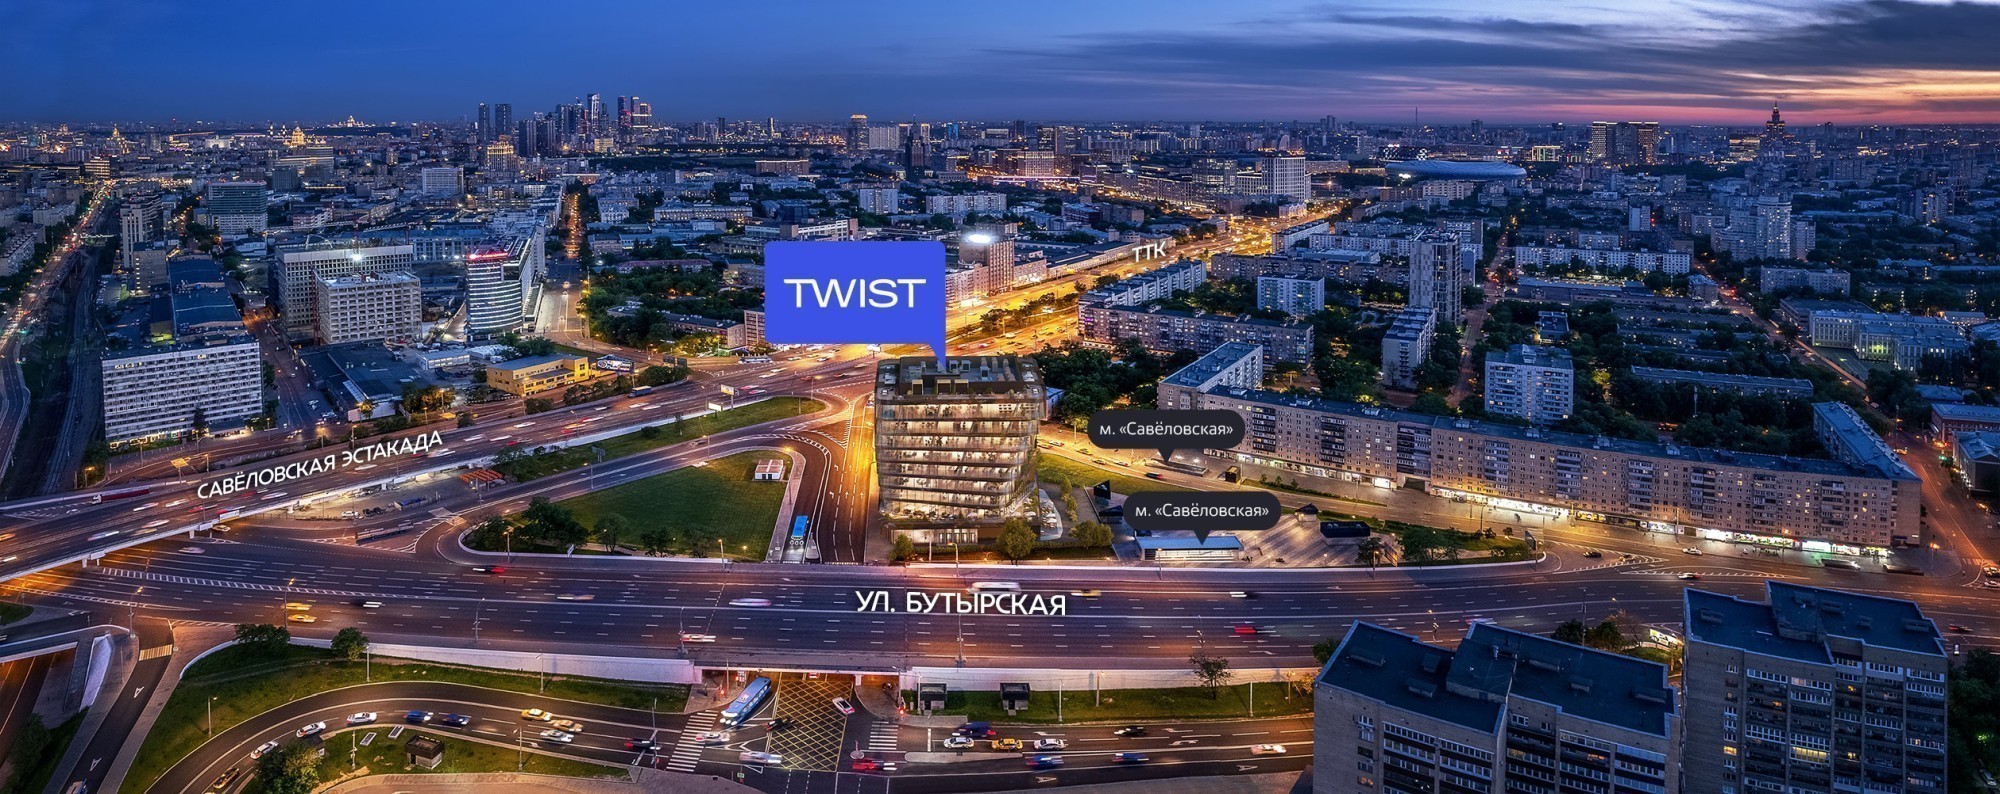 Вид на TWIST со стороны Савёловского вокзала